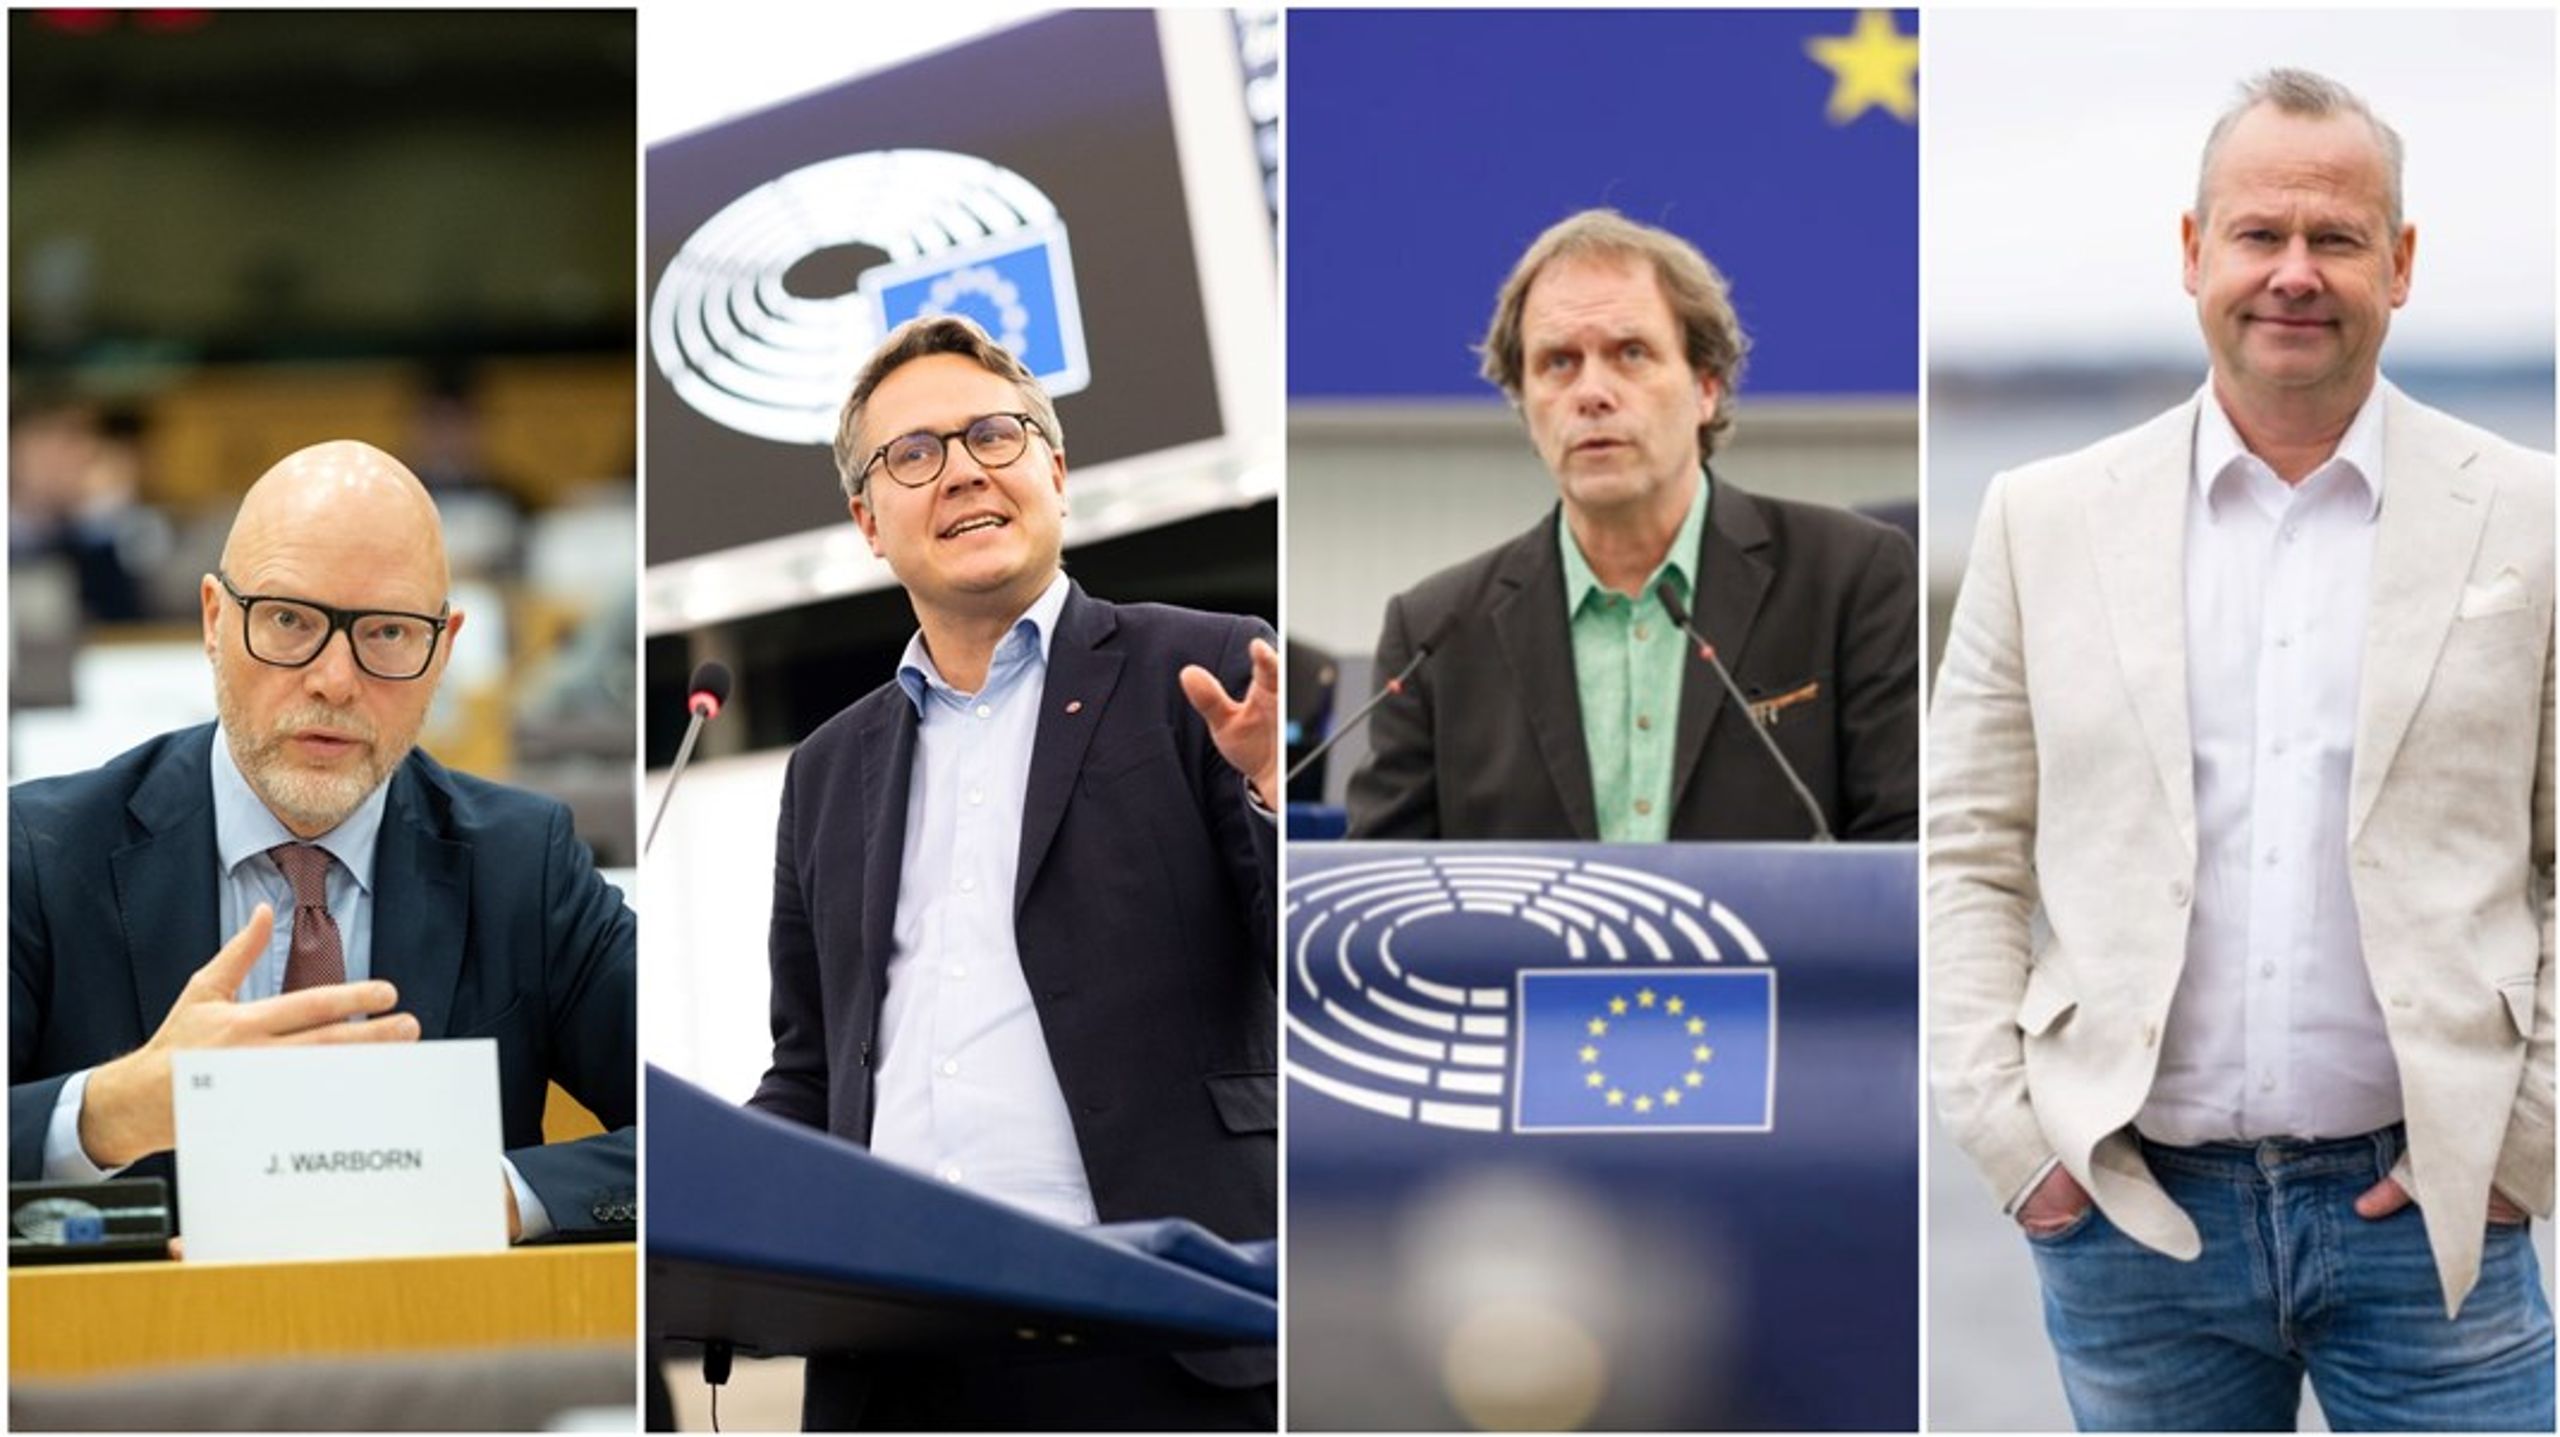 Fyra svenska ledamöter som potentiellt kan få inflytande över&nbsp;EU:s transportpolitik, där många toppar försvinner i valet: Jörgen Warborn (M), Johan Danielsson (S), Pär Holmgren (MP) och Patrik Jönsson (SD).<br>